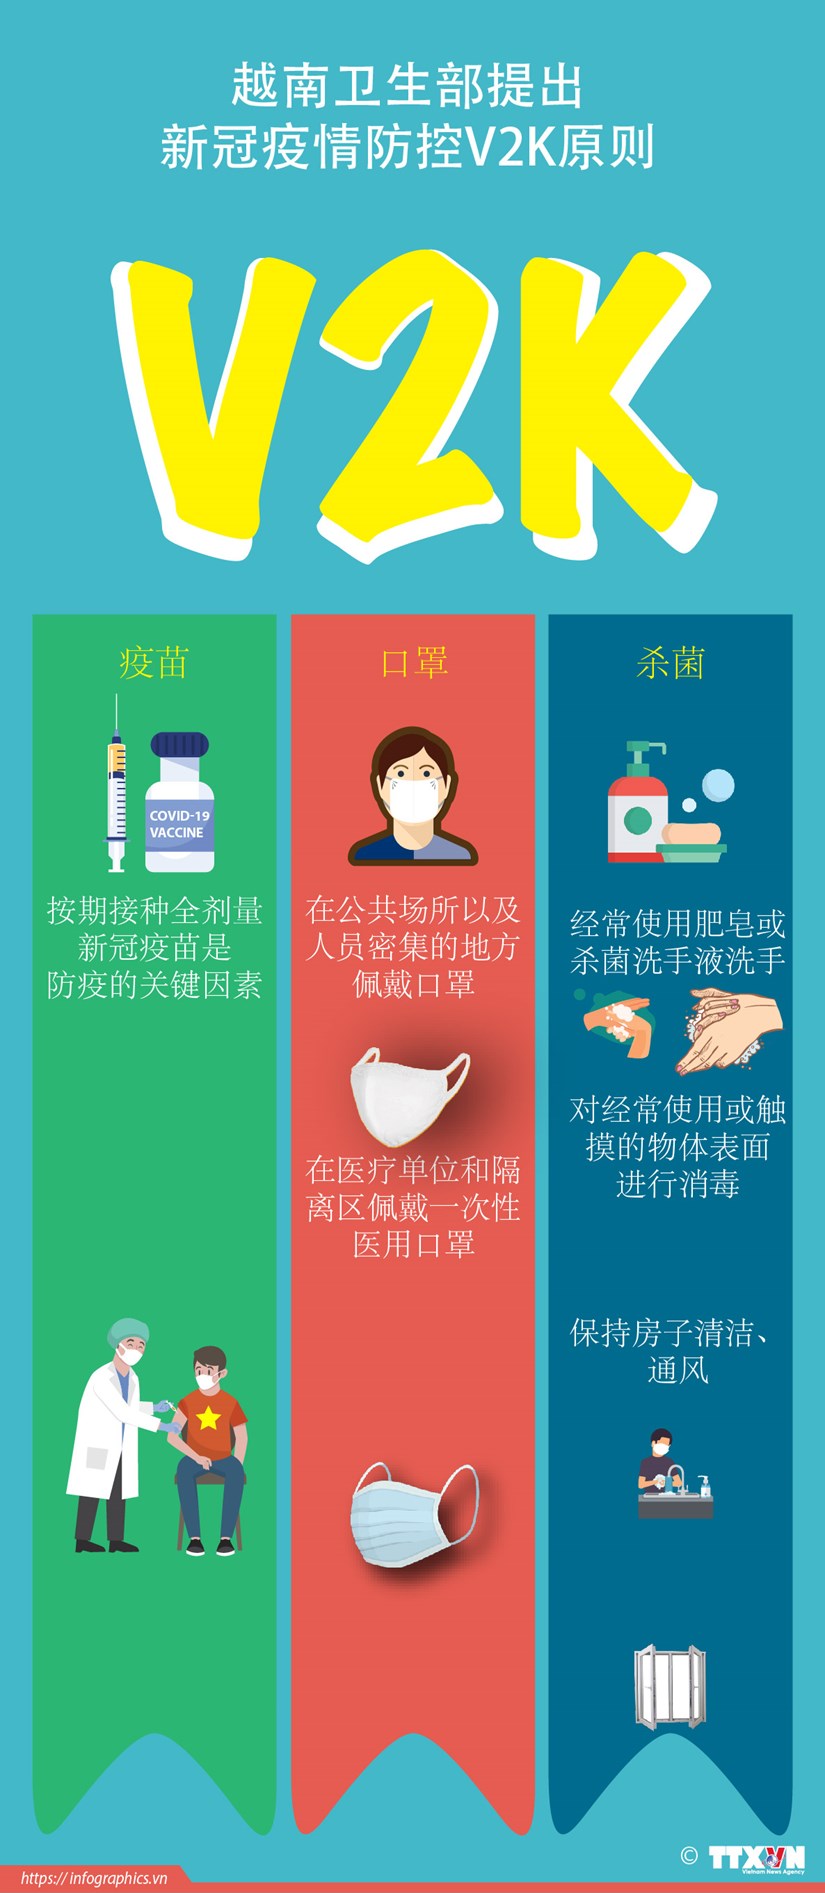 图表新闻：越南卫生部提出新冠疫情防控V2K原则 hinh anh 1